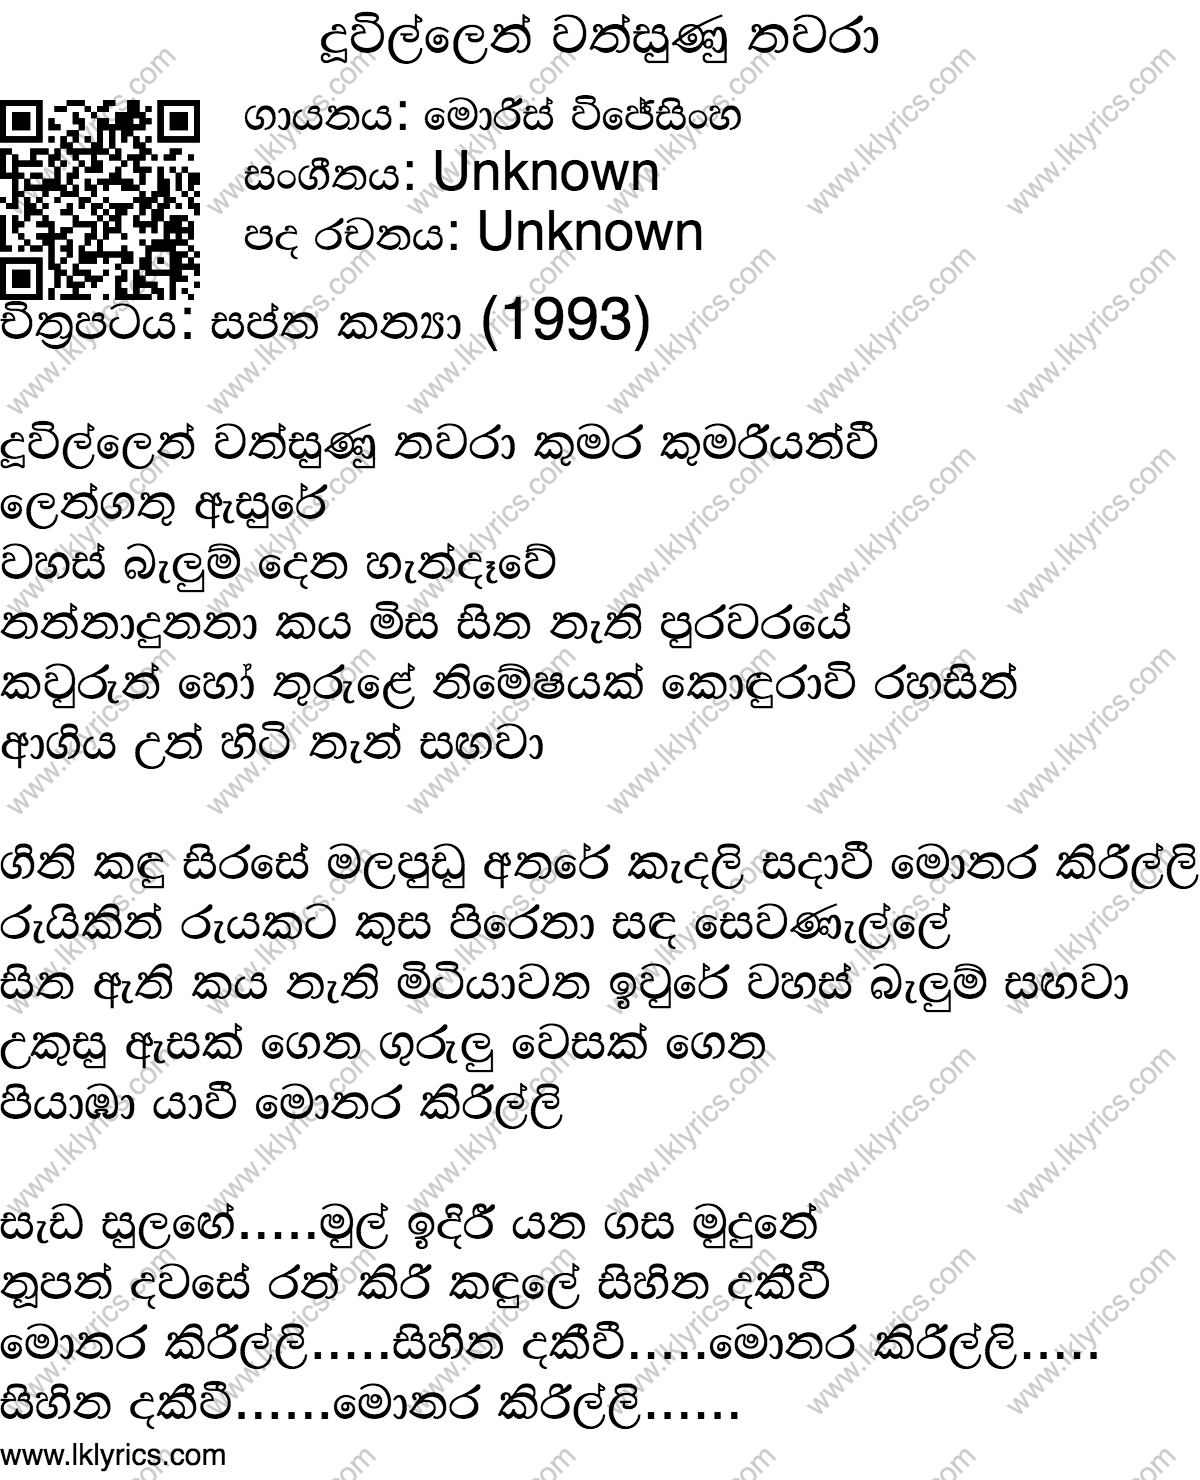 Doowillen Wathsunu Thawara Lyrics